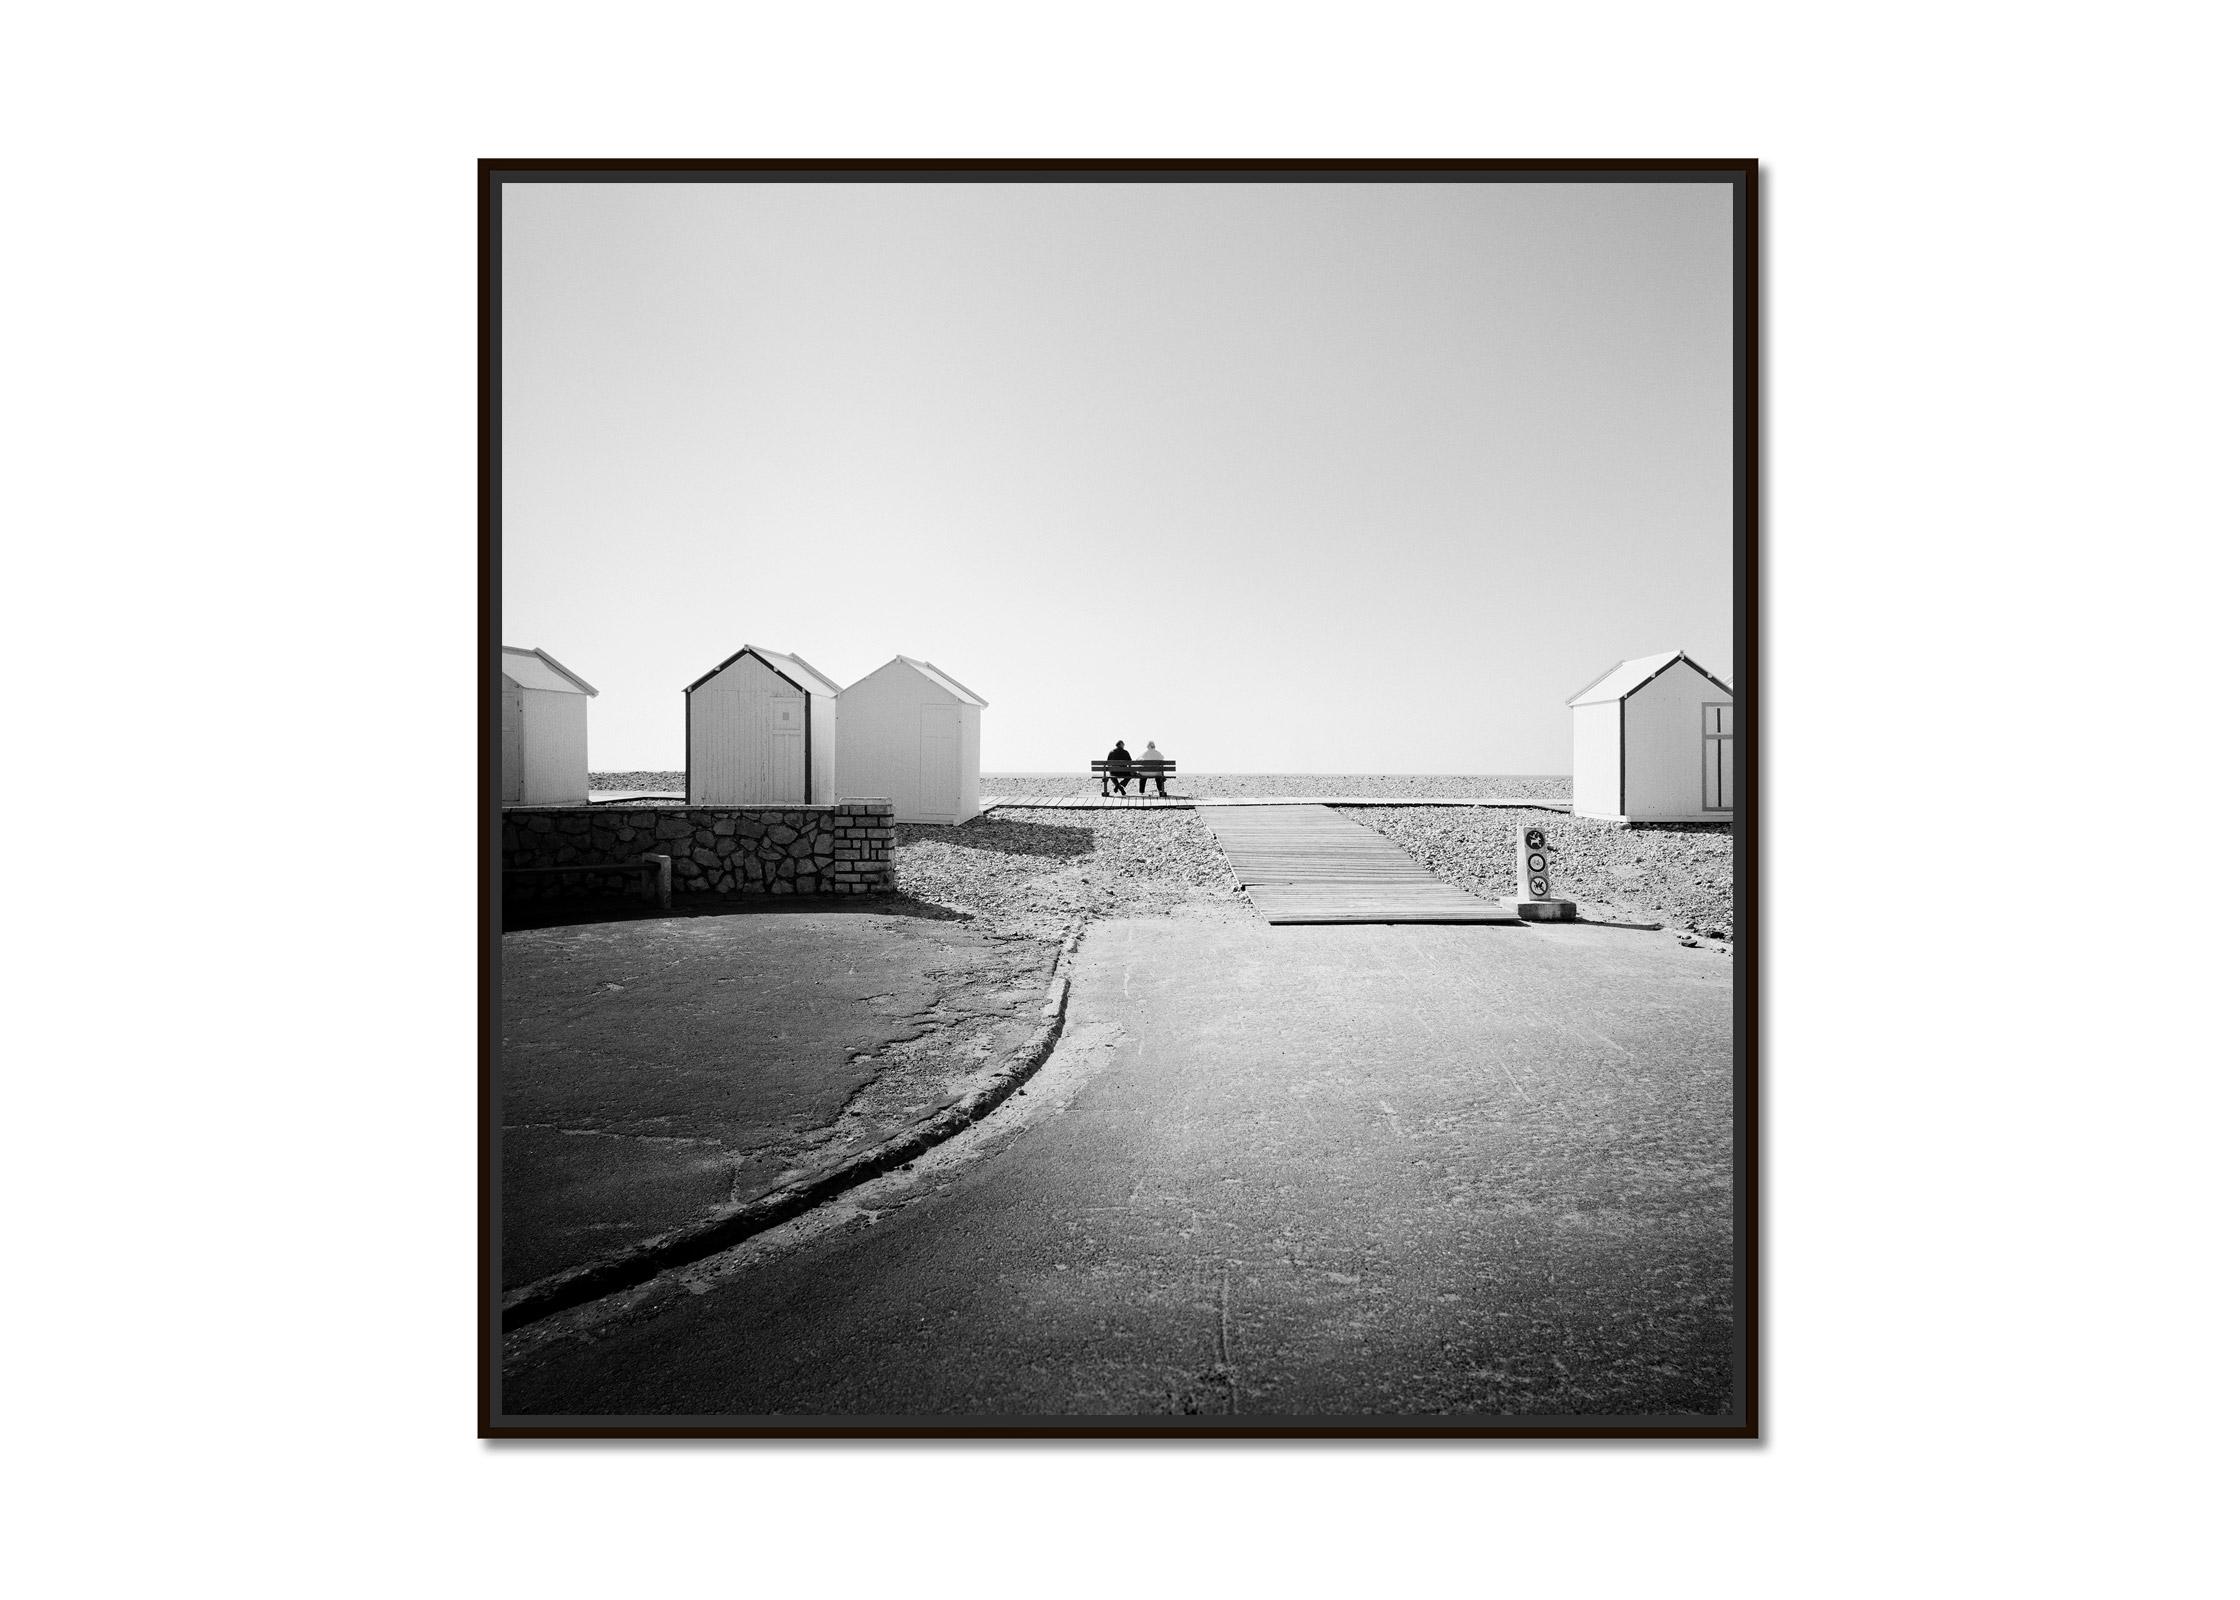 Zusammen am Strand, Frankreich, Schwarz-Weiß-Kunstfotografie, Landschaft – Photograph von Gerald Berghammer